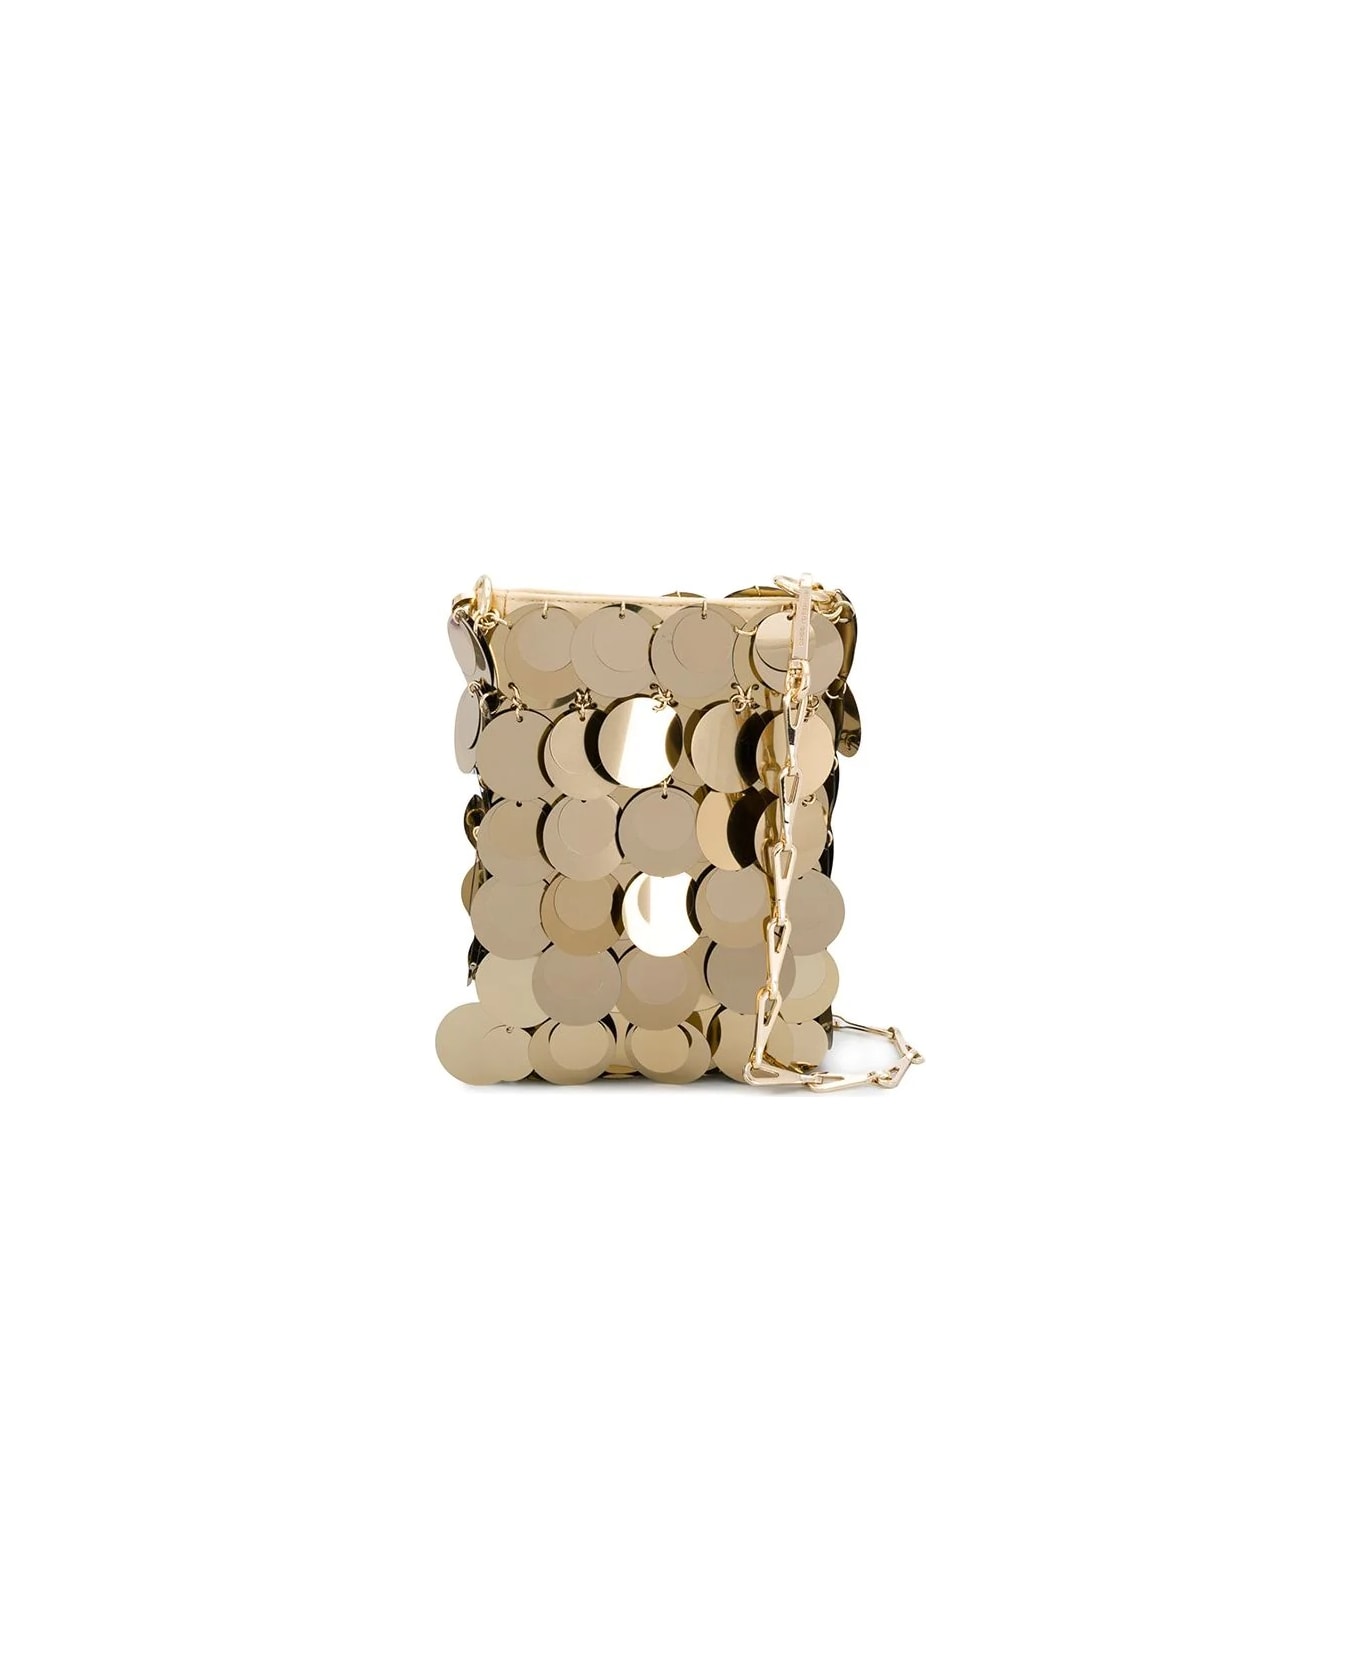 Paco Rabanne Sac Soir Sparkle Mini Bag In Gold - Gold